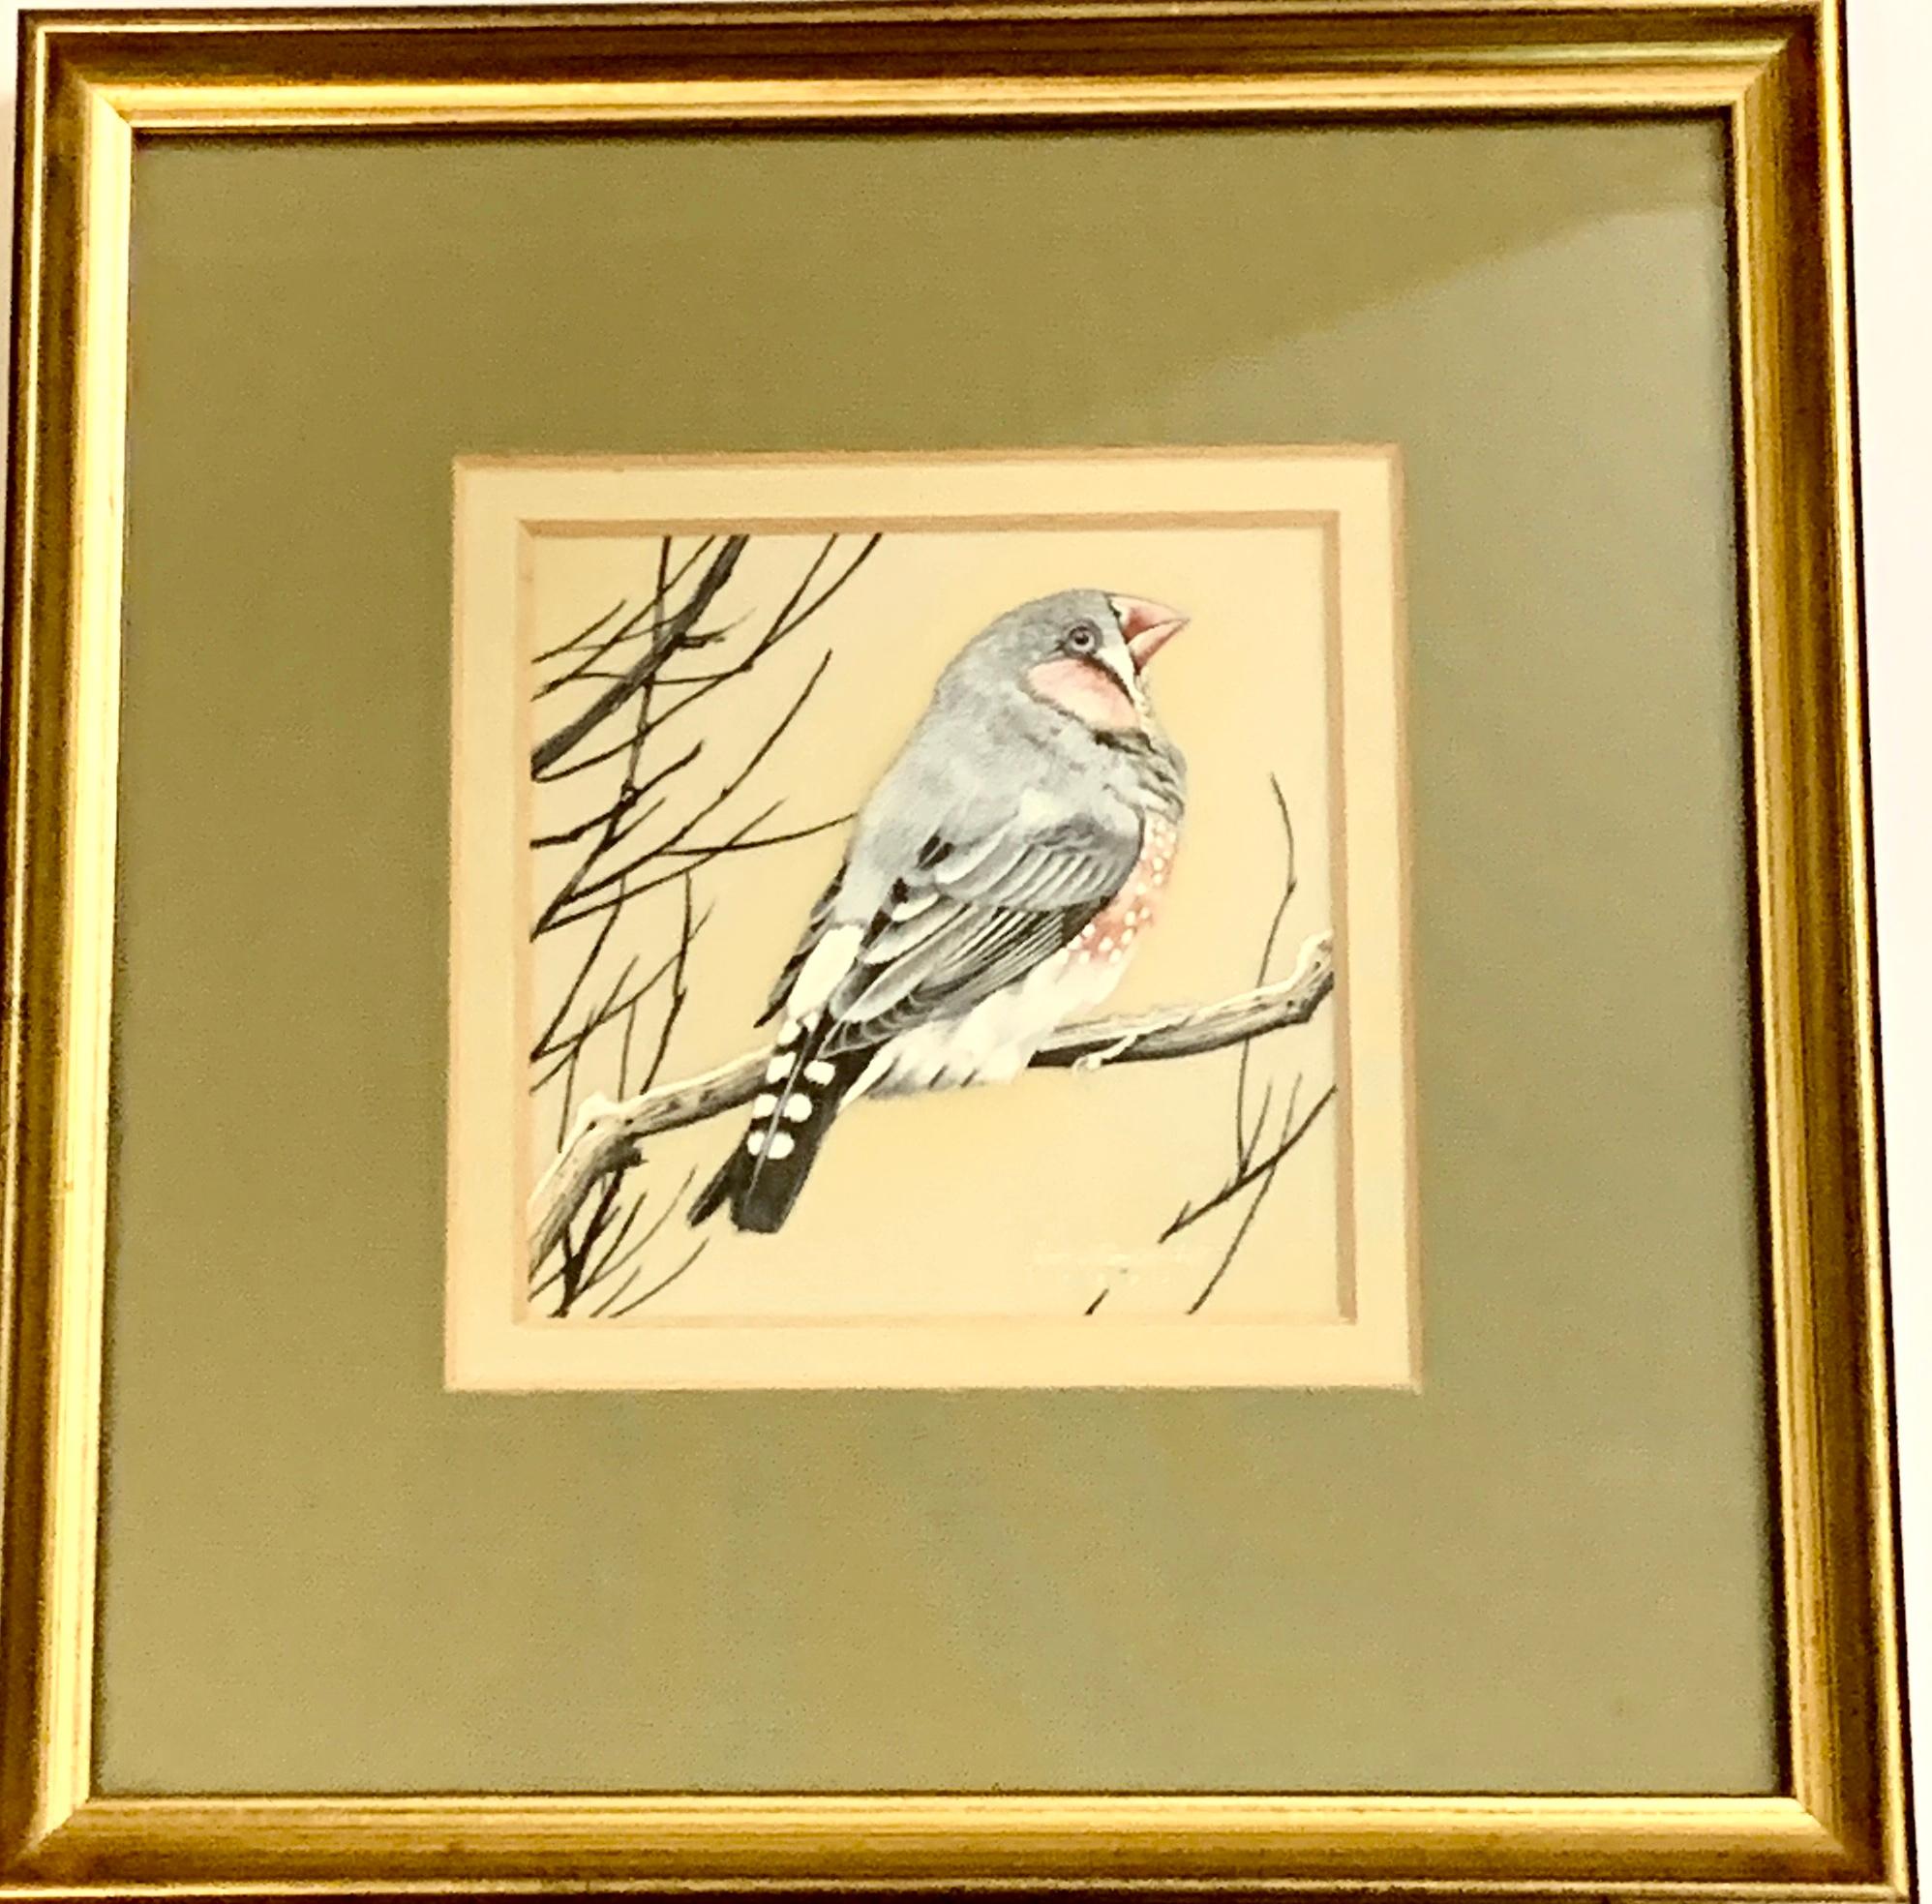 Animal Art James Williamson-Bell - Étude anglaise du 20e siècle d'un oiseau de Finch assis sur une branche recouverte de neige